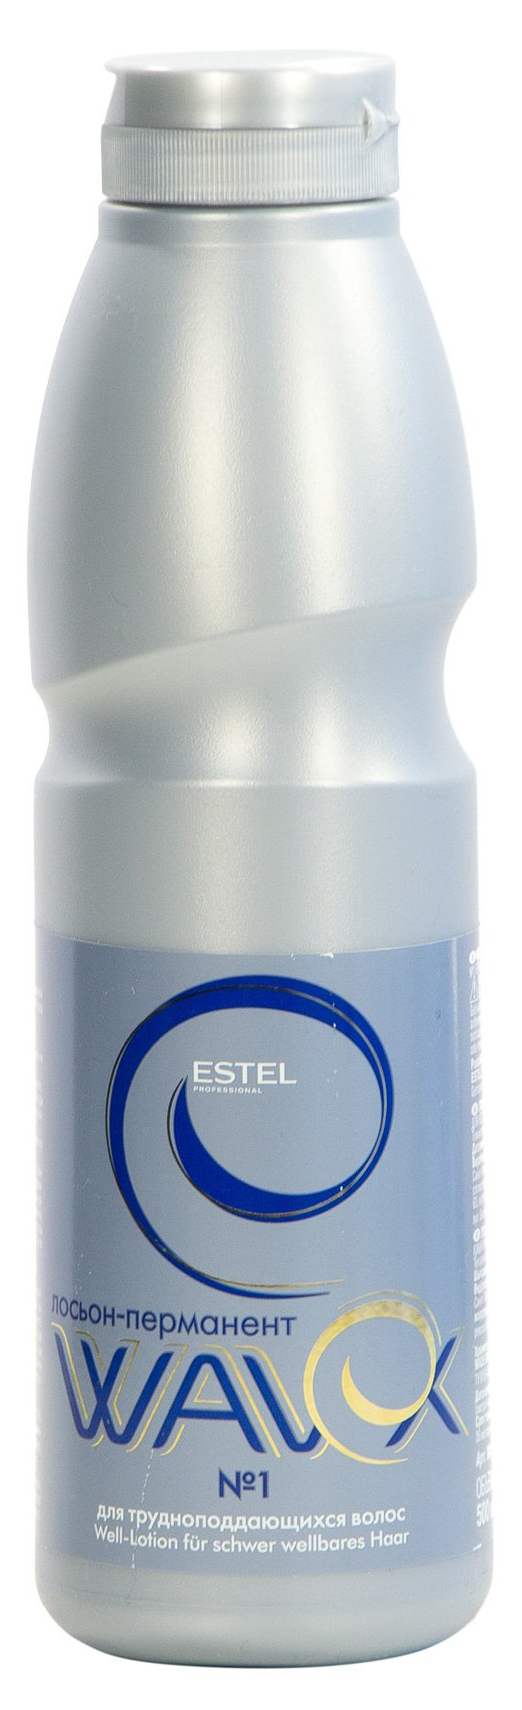 Лосьон-перманент Estel Wavex 500 мл №1 estel professional набор для химической завивки для окрашенных волос 2 100 мл